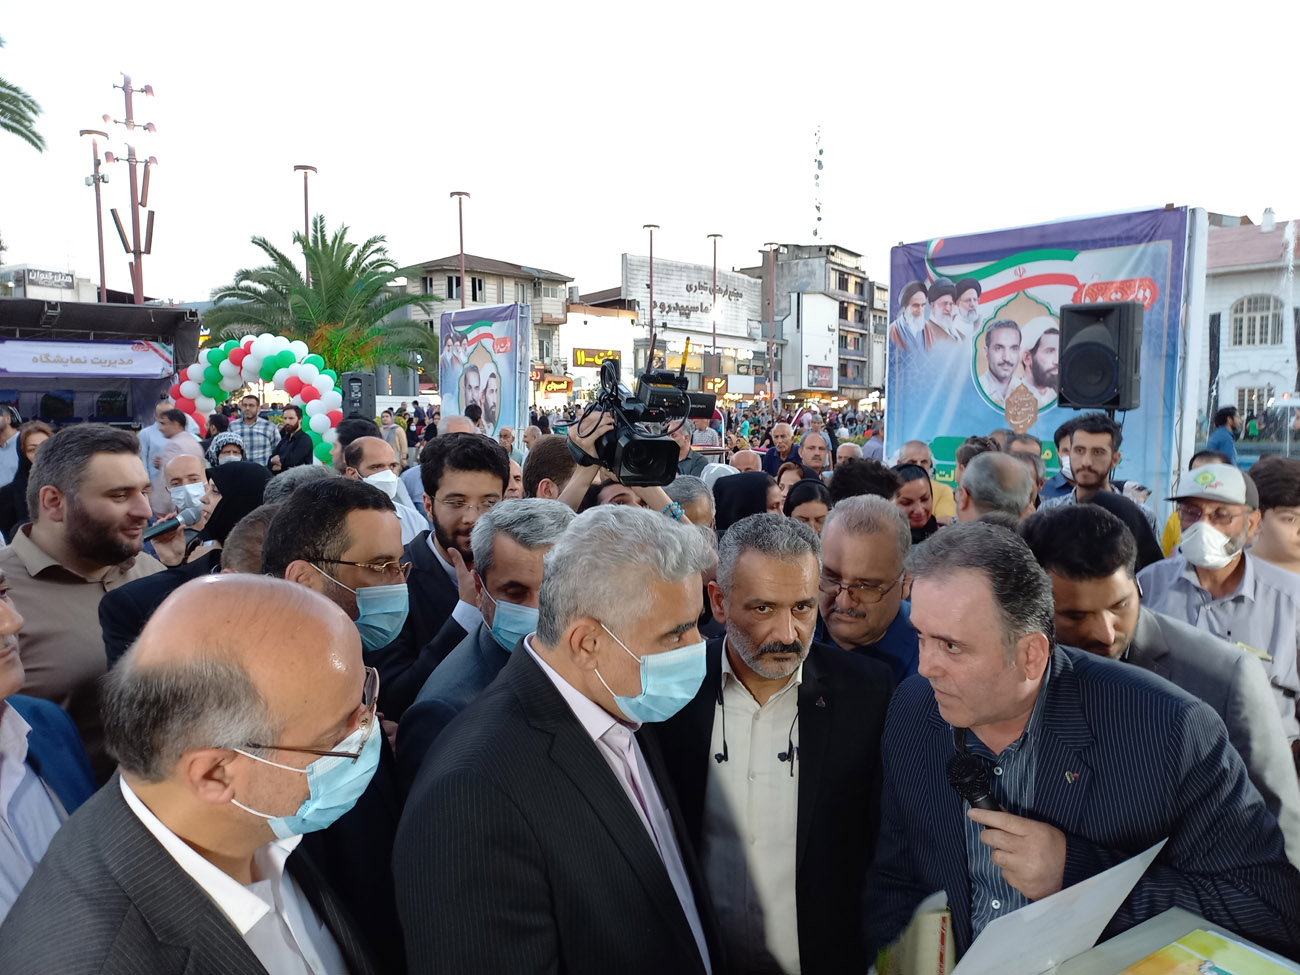 انعکاس دستاوردهای شرکت گاز استان گیلان در نمایشگاه هفته دولت